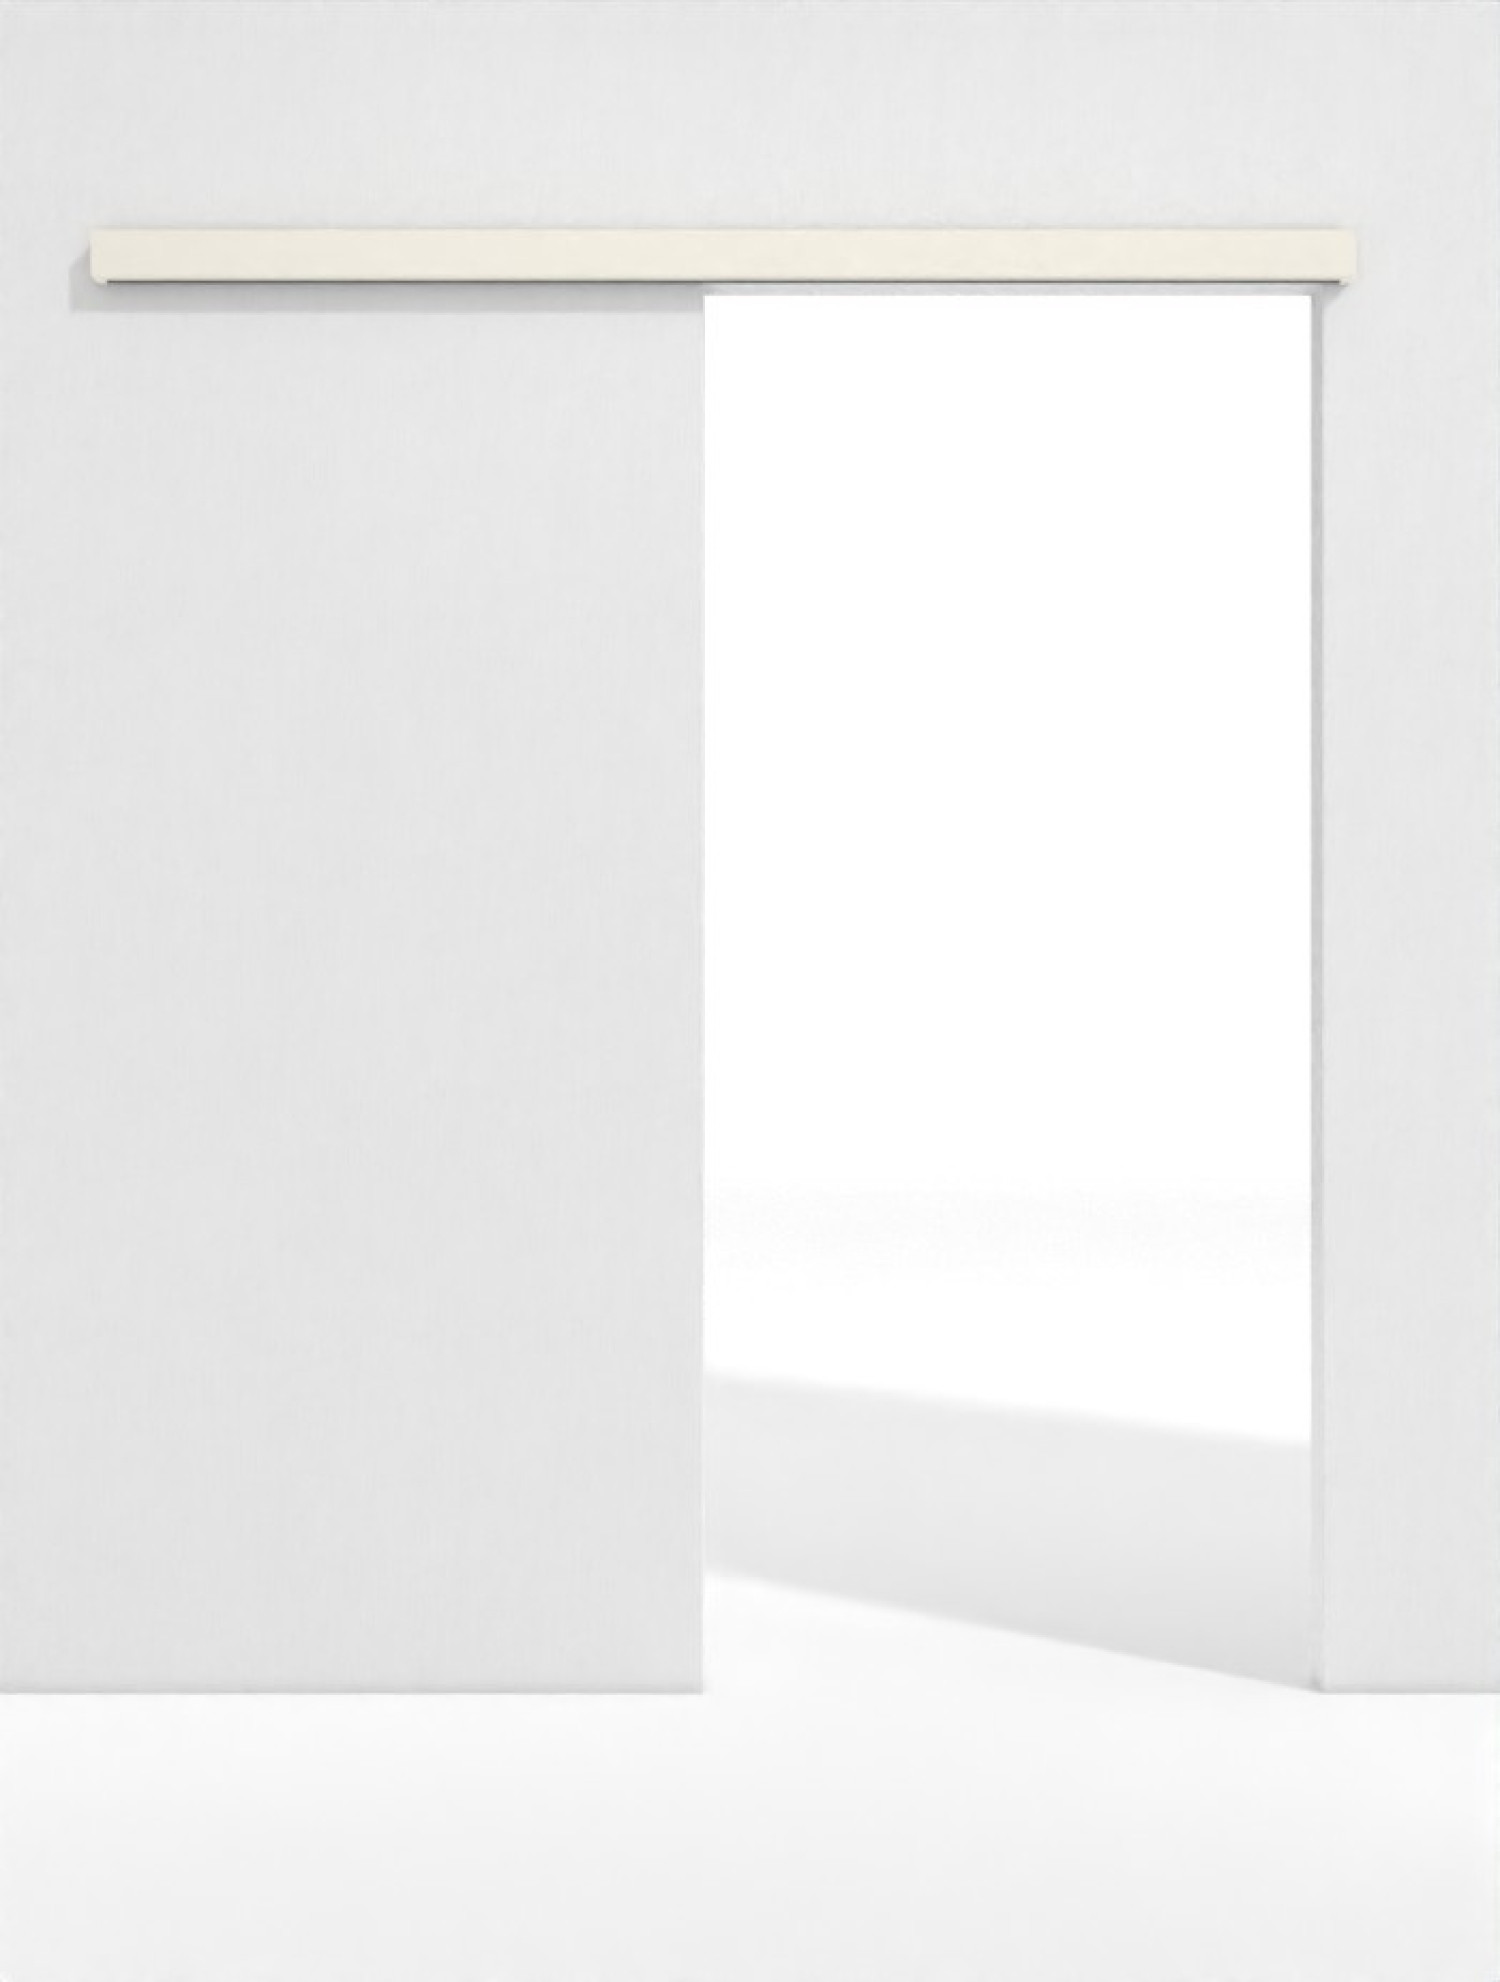 Frontbild von Schiebetürsystem WestaLack Klassik Weiß RAL 9010 vor der Wand laufend ohne Zarge - Westag